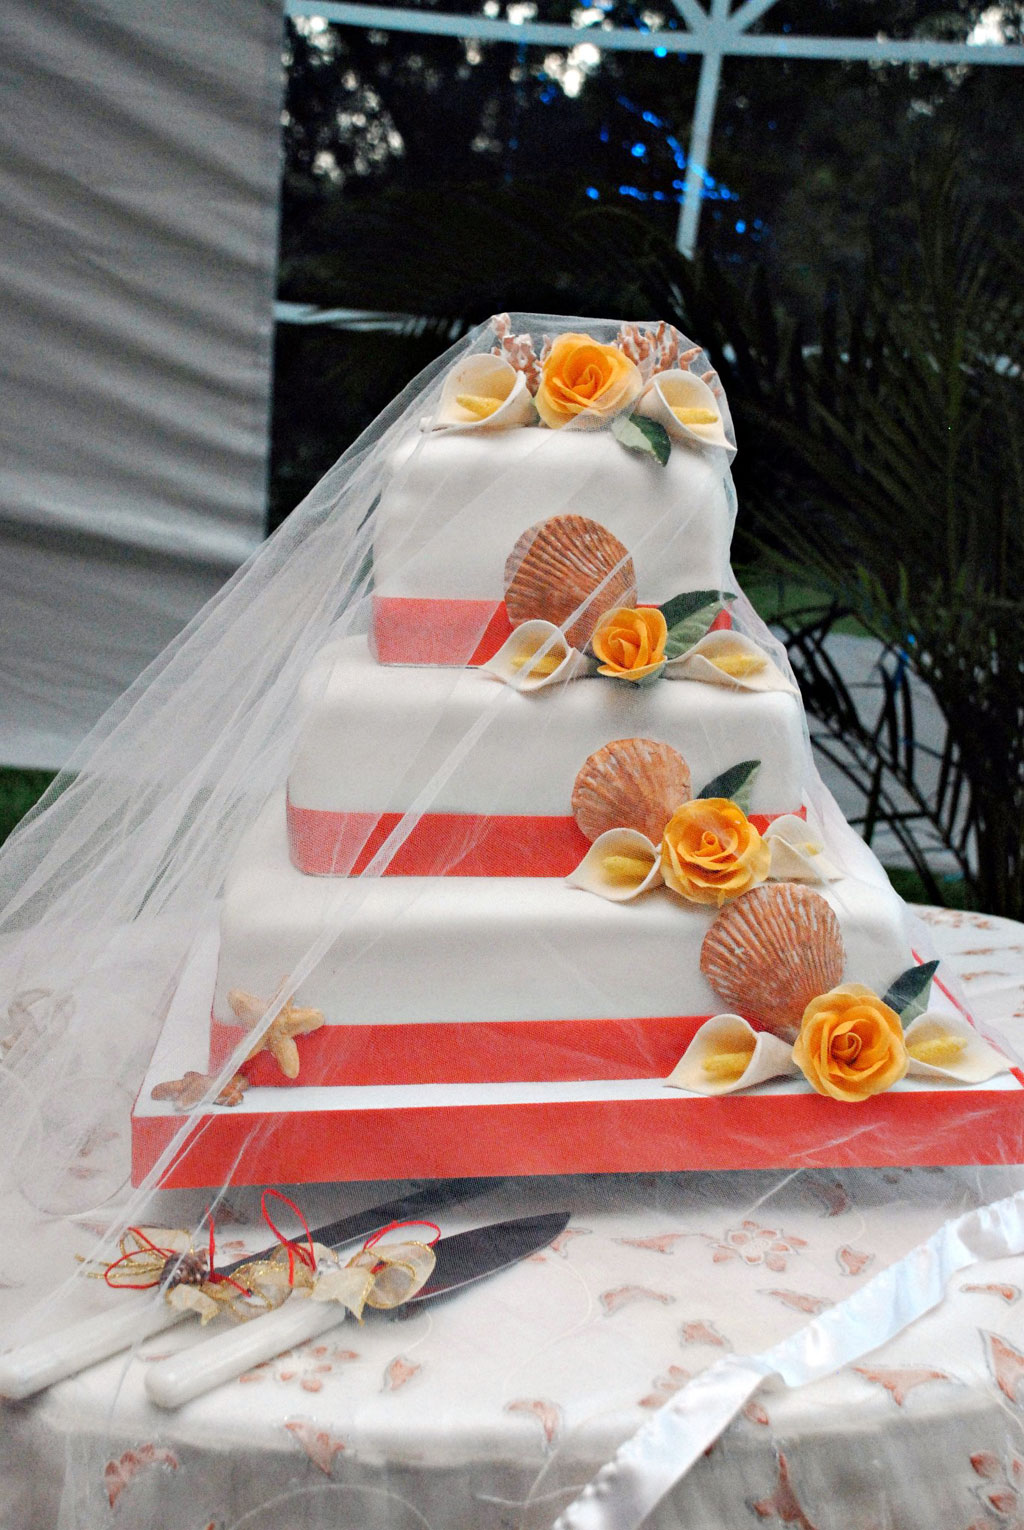 Wedding cake designers in jamaica